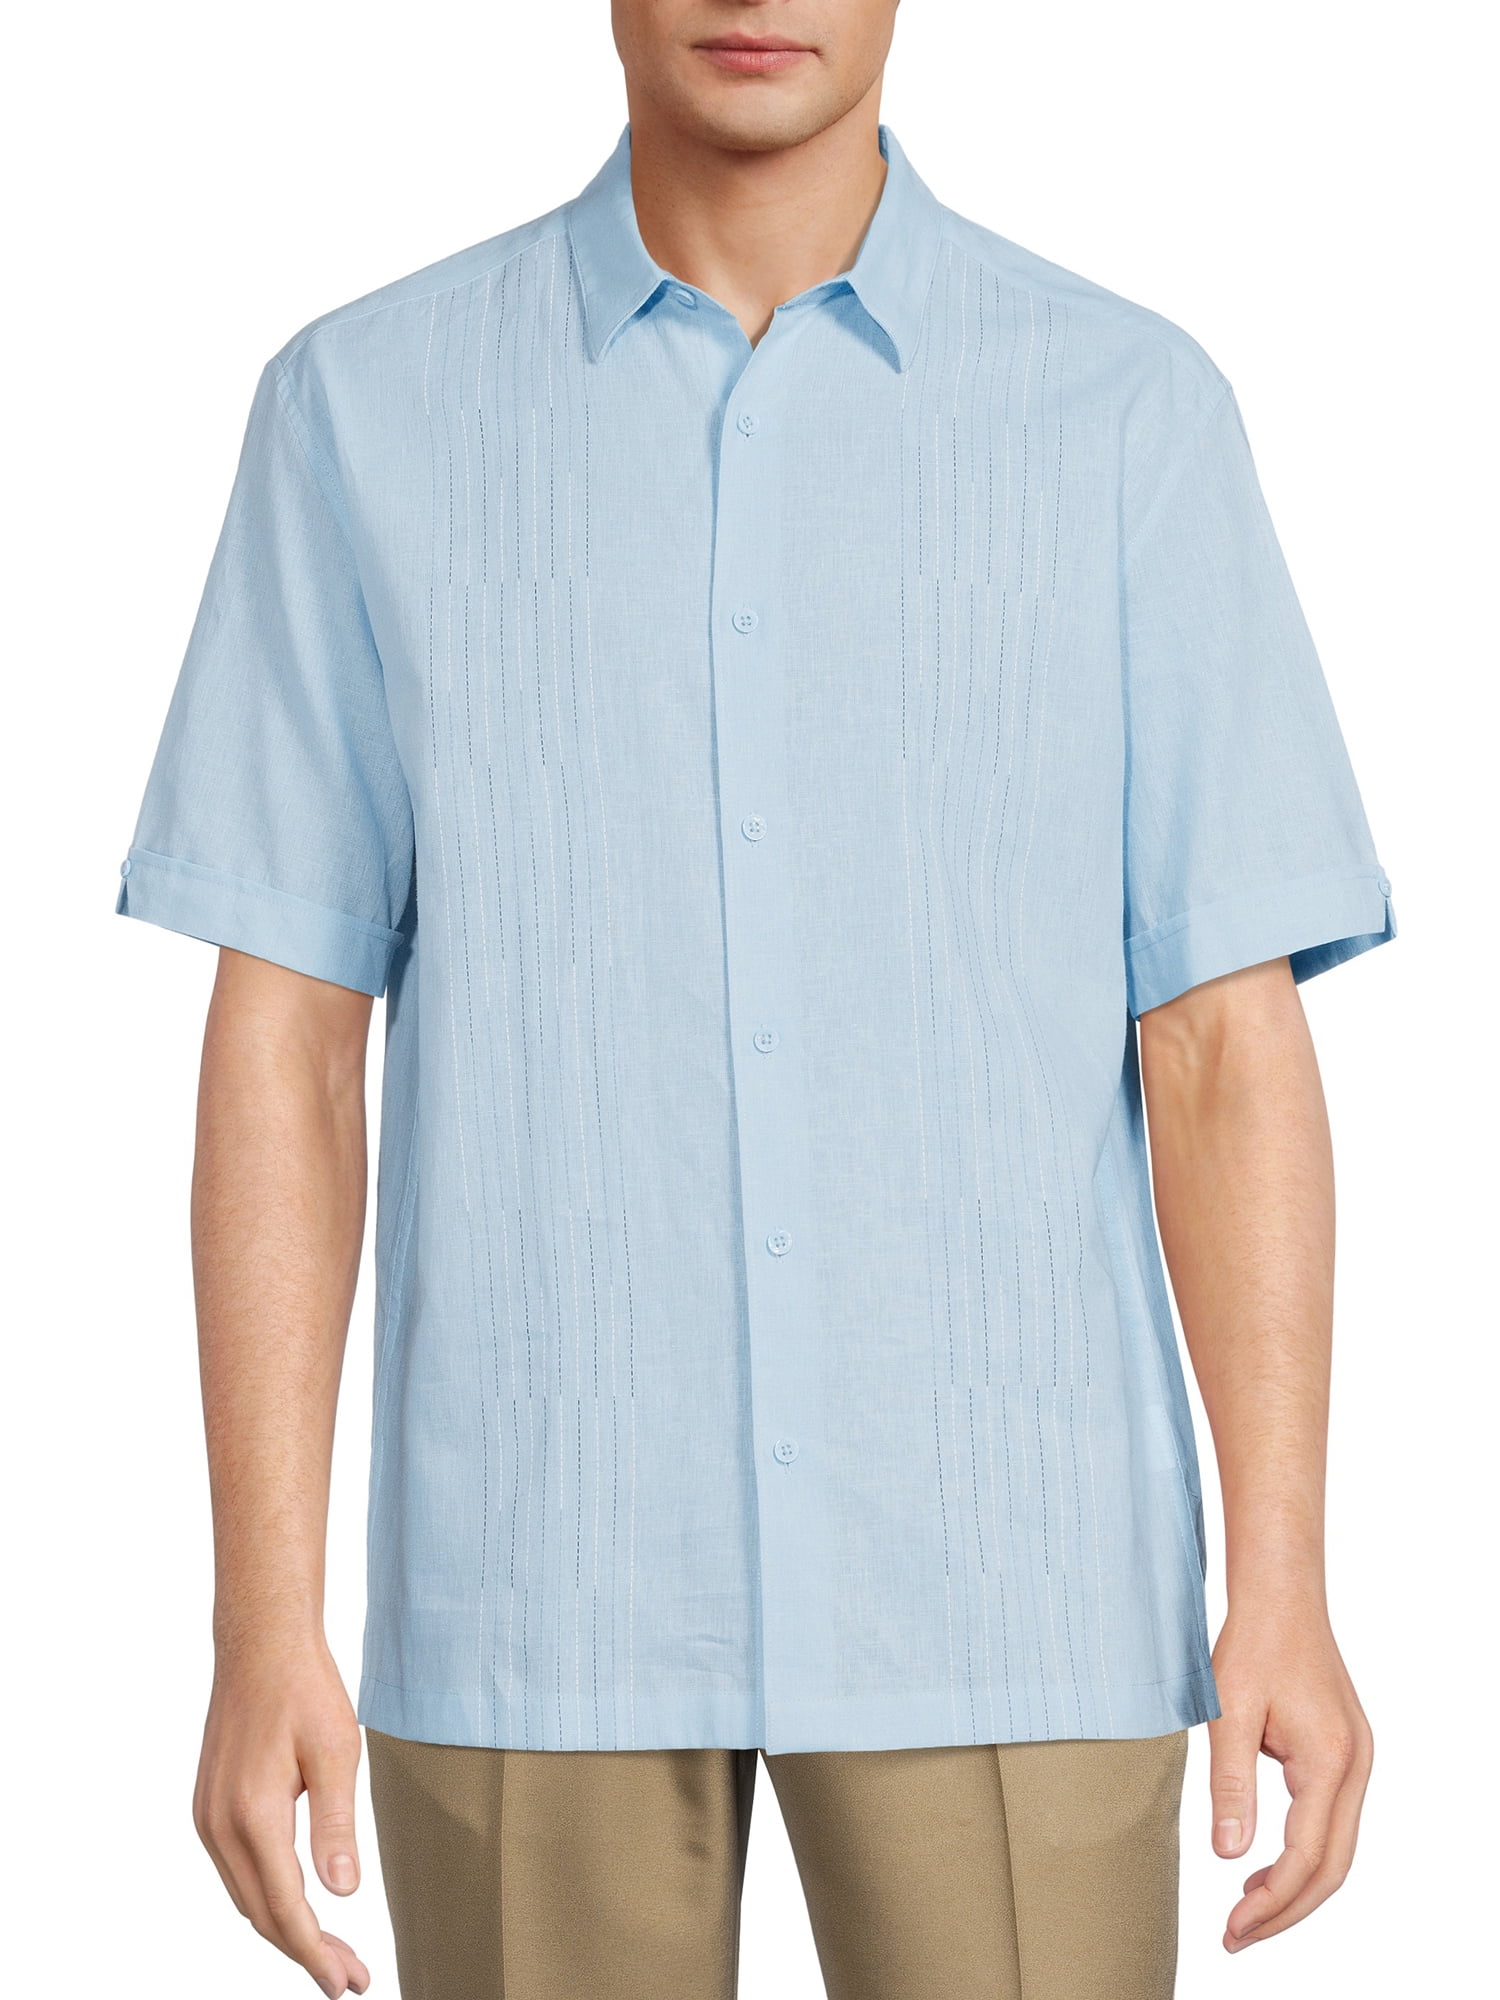 Cafe Luna Men's Short Sleeve Linen Cotton Panel Woven Shirt - Walmart.com